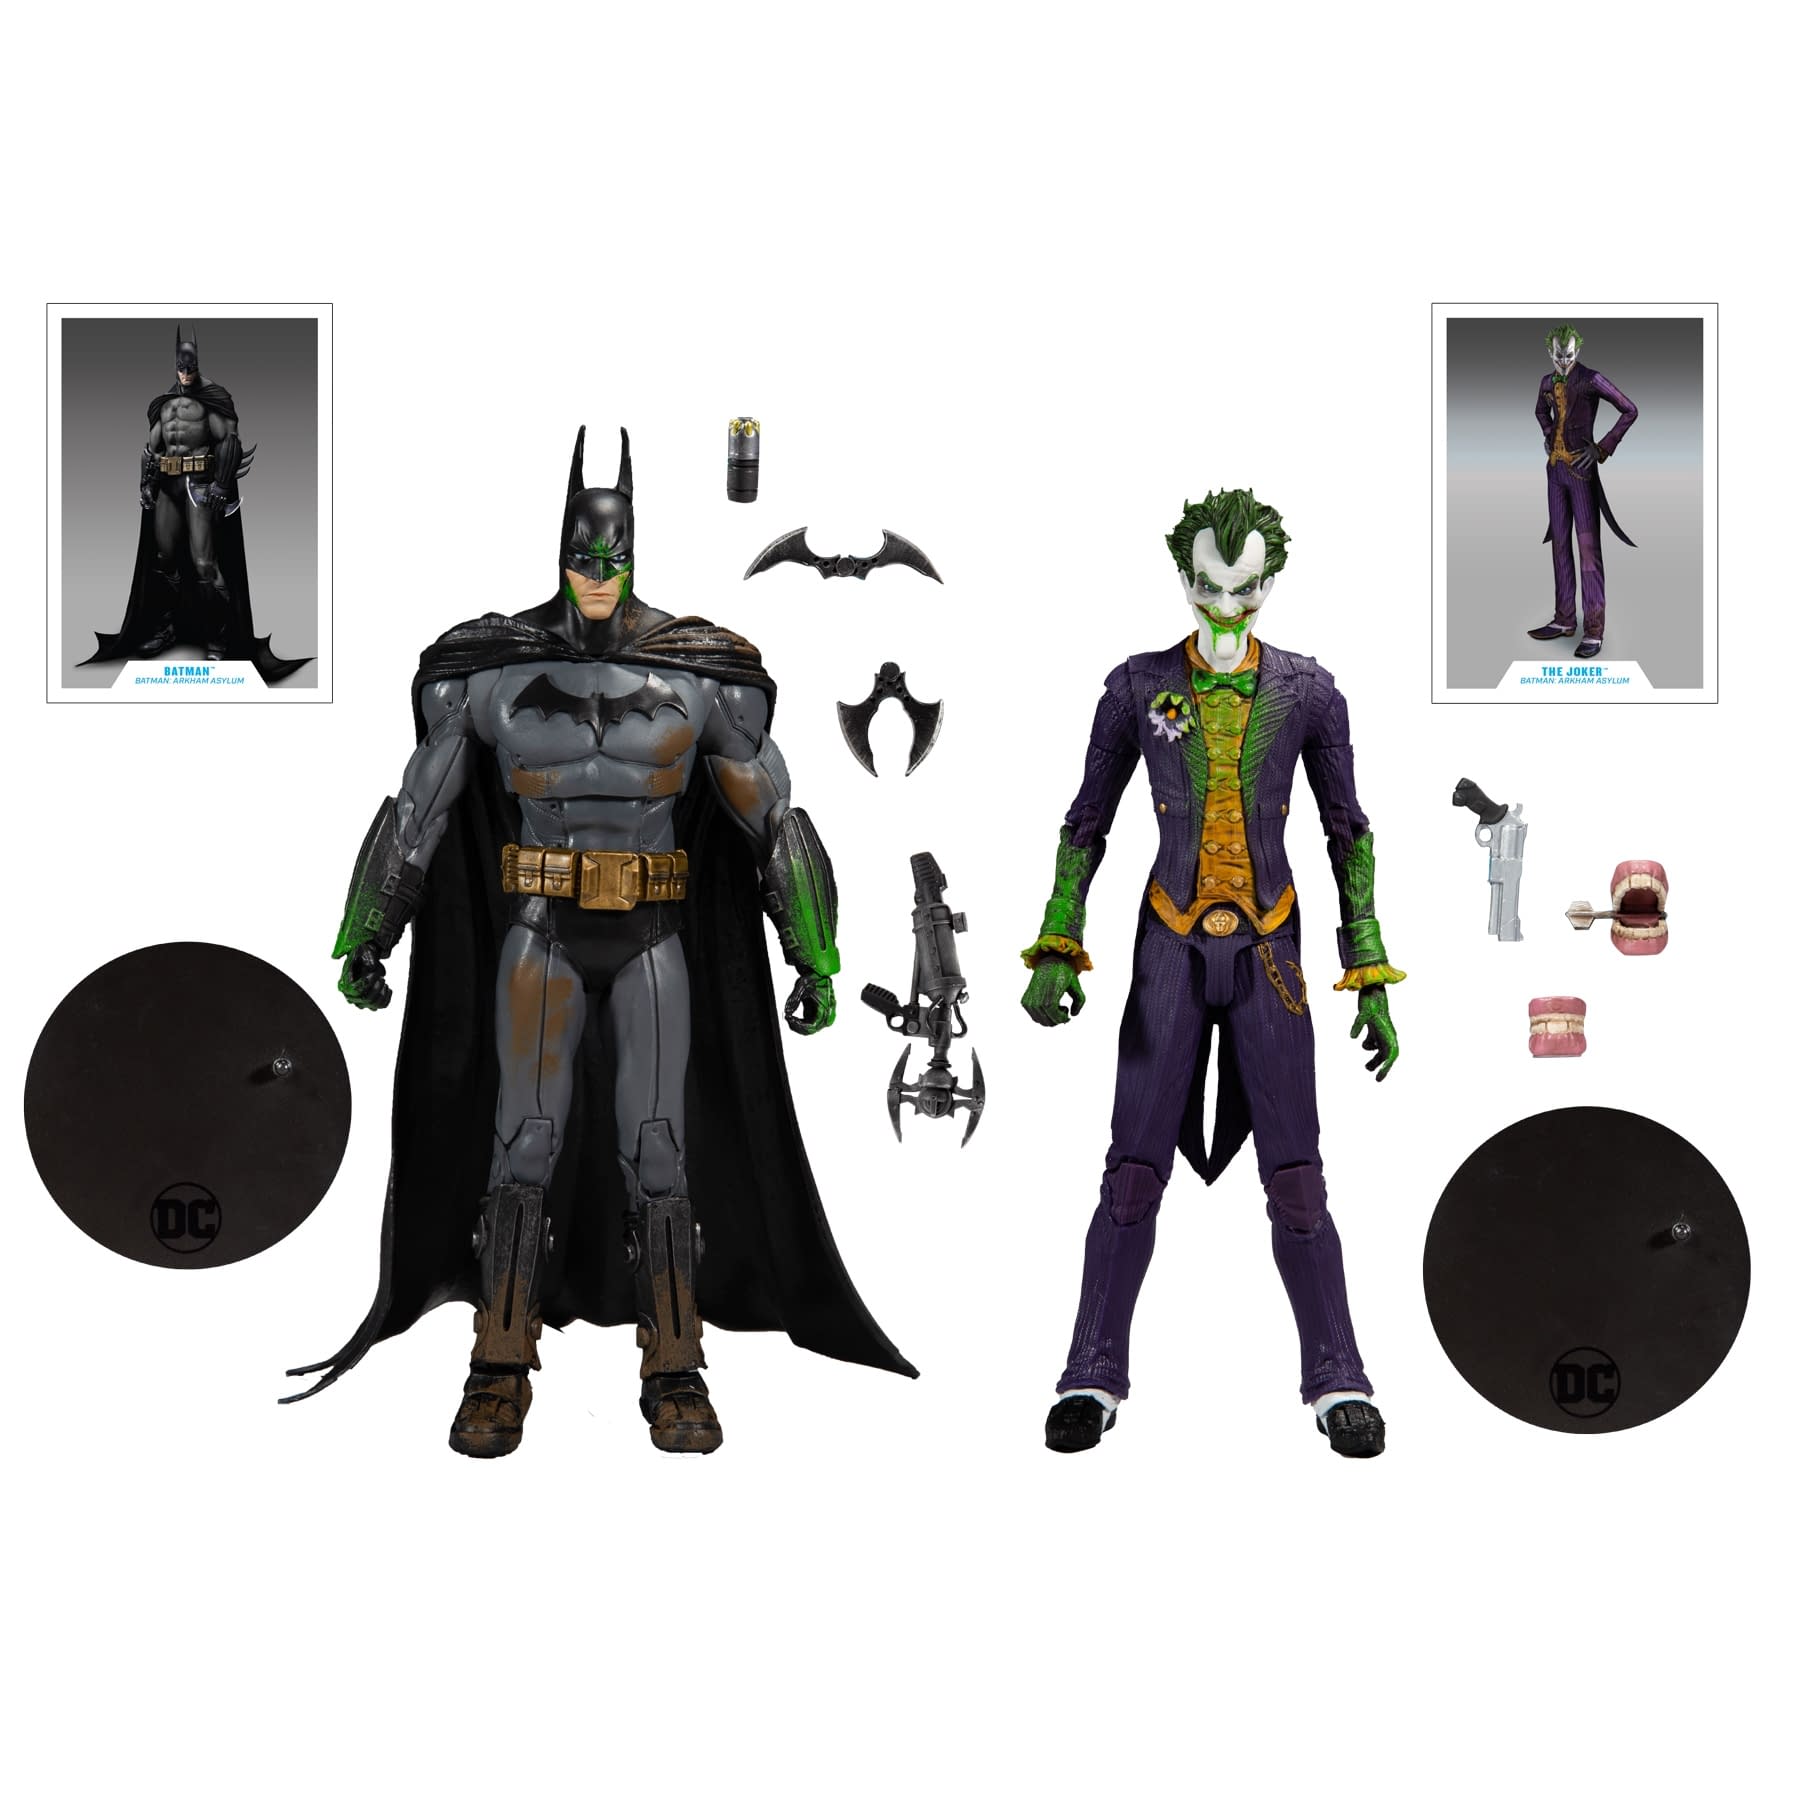 Details about  / 2014 Mattel DC Batman Arkham Origins Multiverse The Joker Action Figure MOC